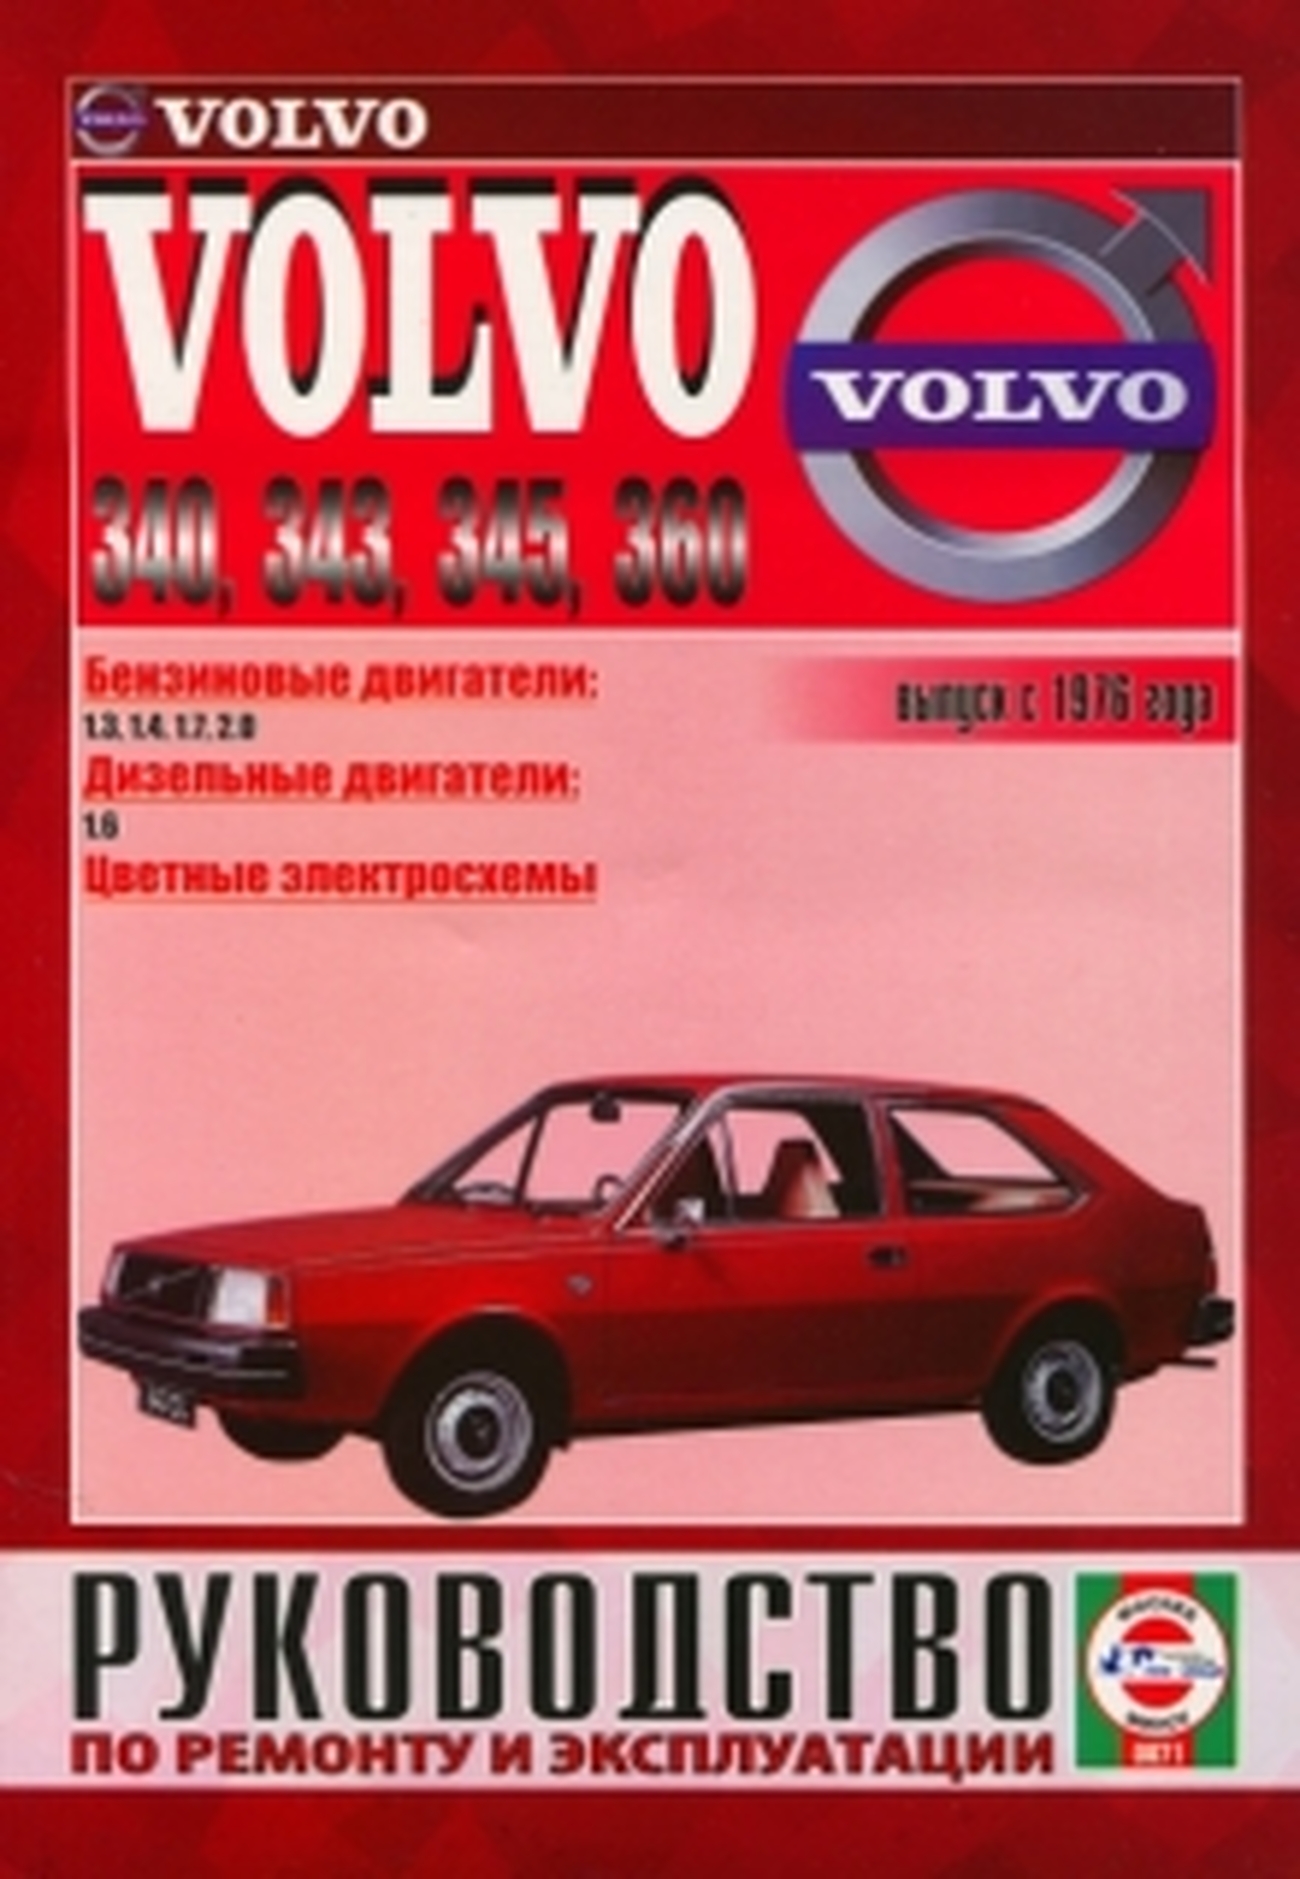 Книга: VOLVO 340, 343, 345, 360 (б , д) с 1976 г.в., рем., экспл., то | Чижовка